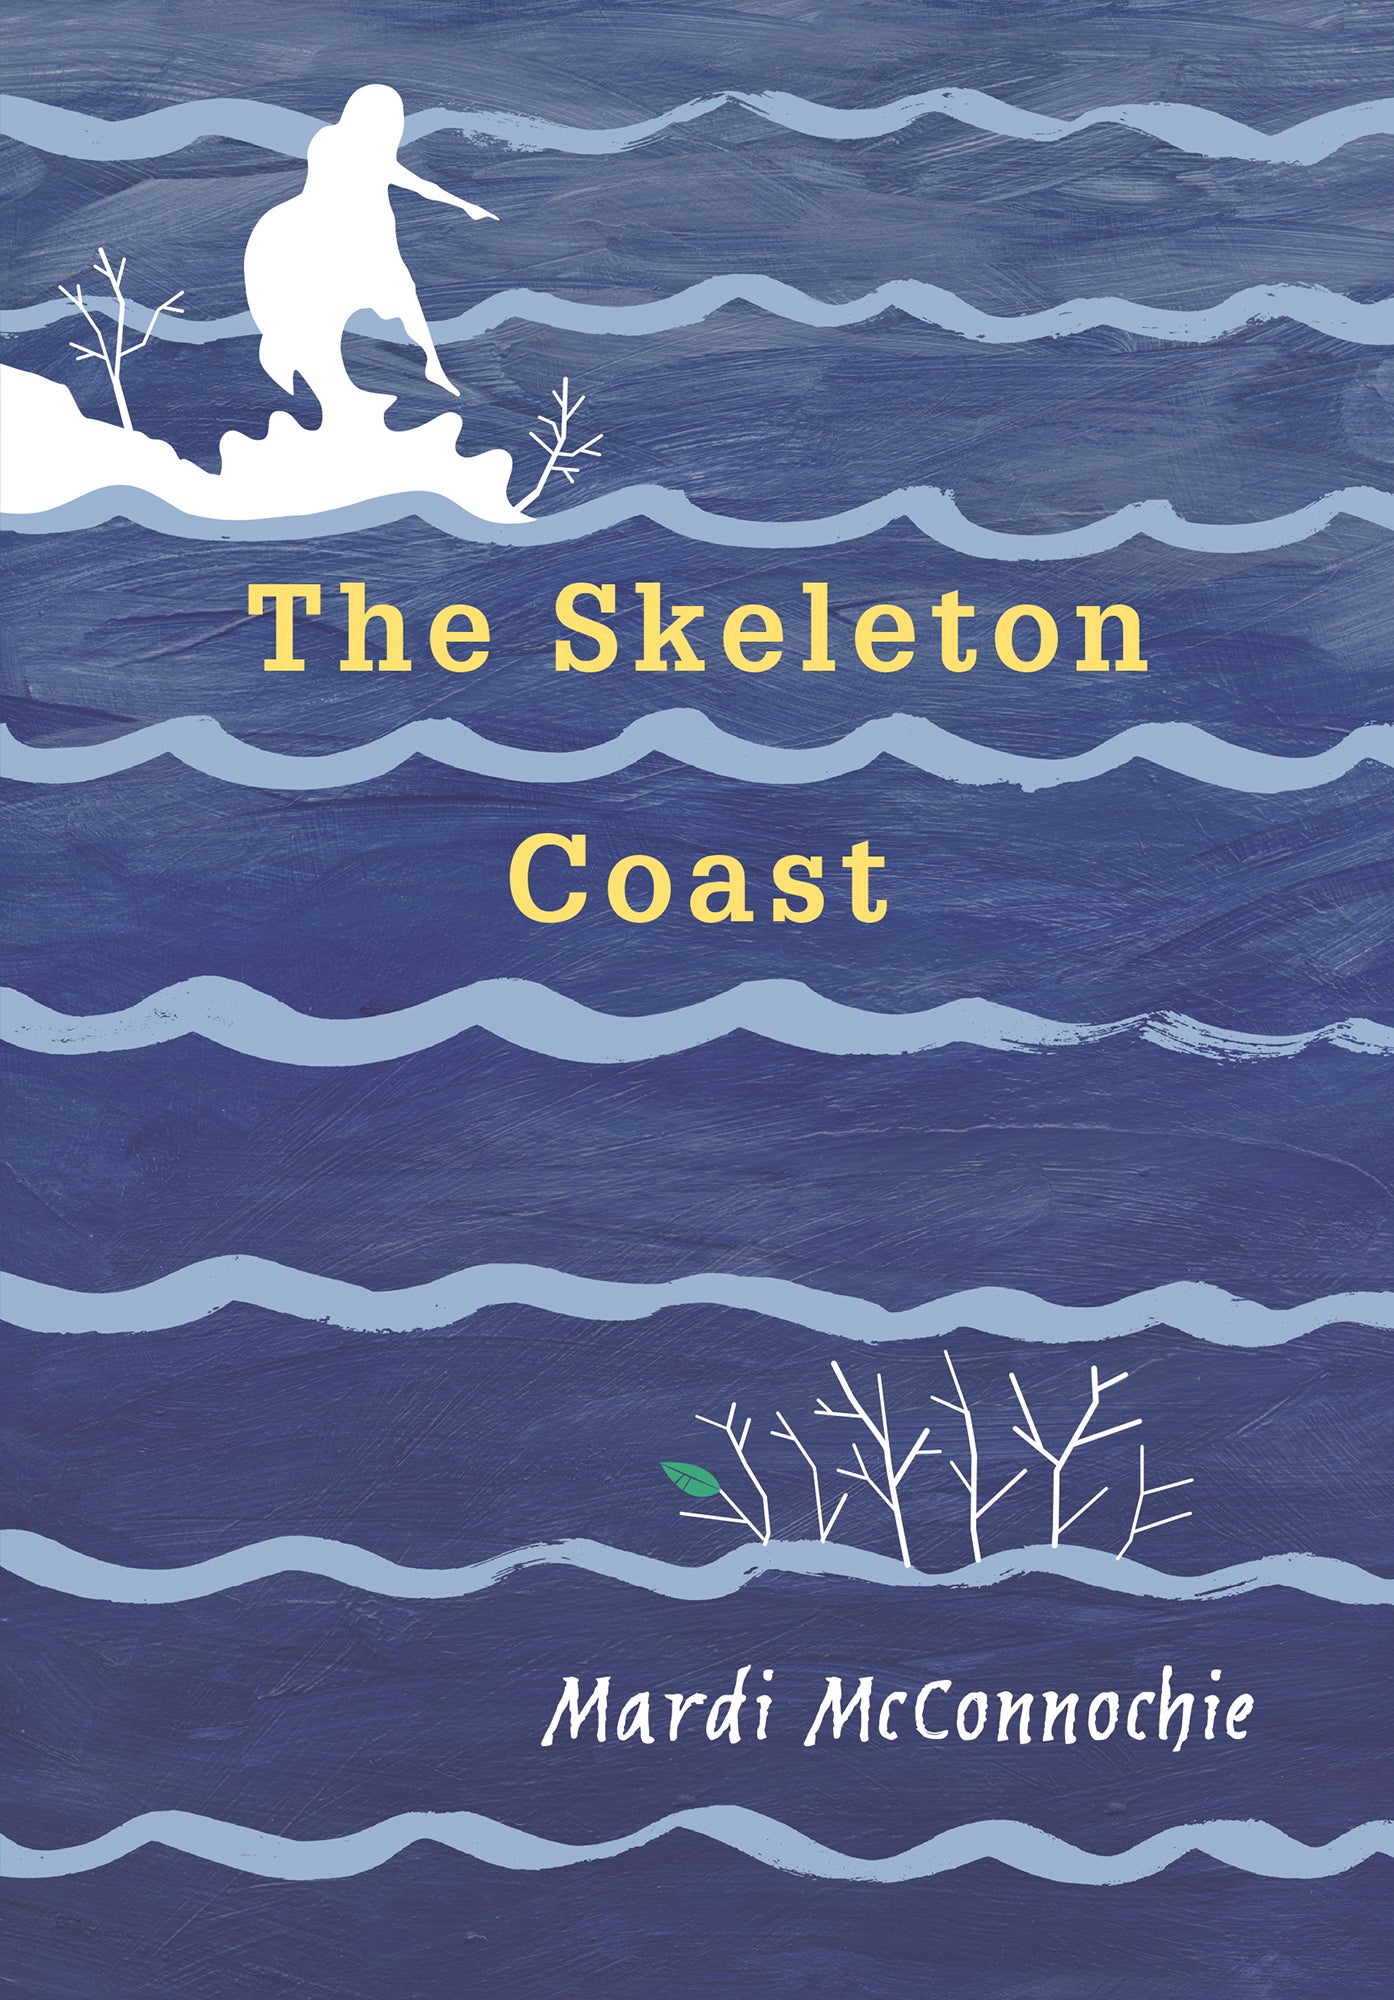 The Skeleton Coast